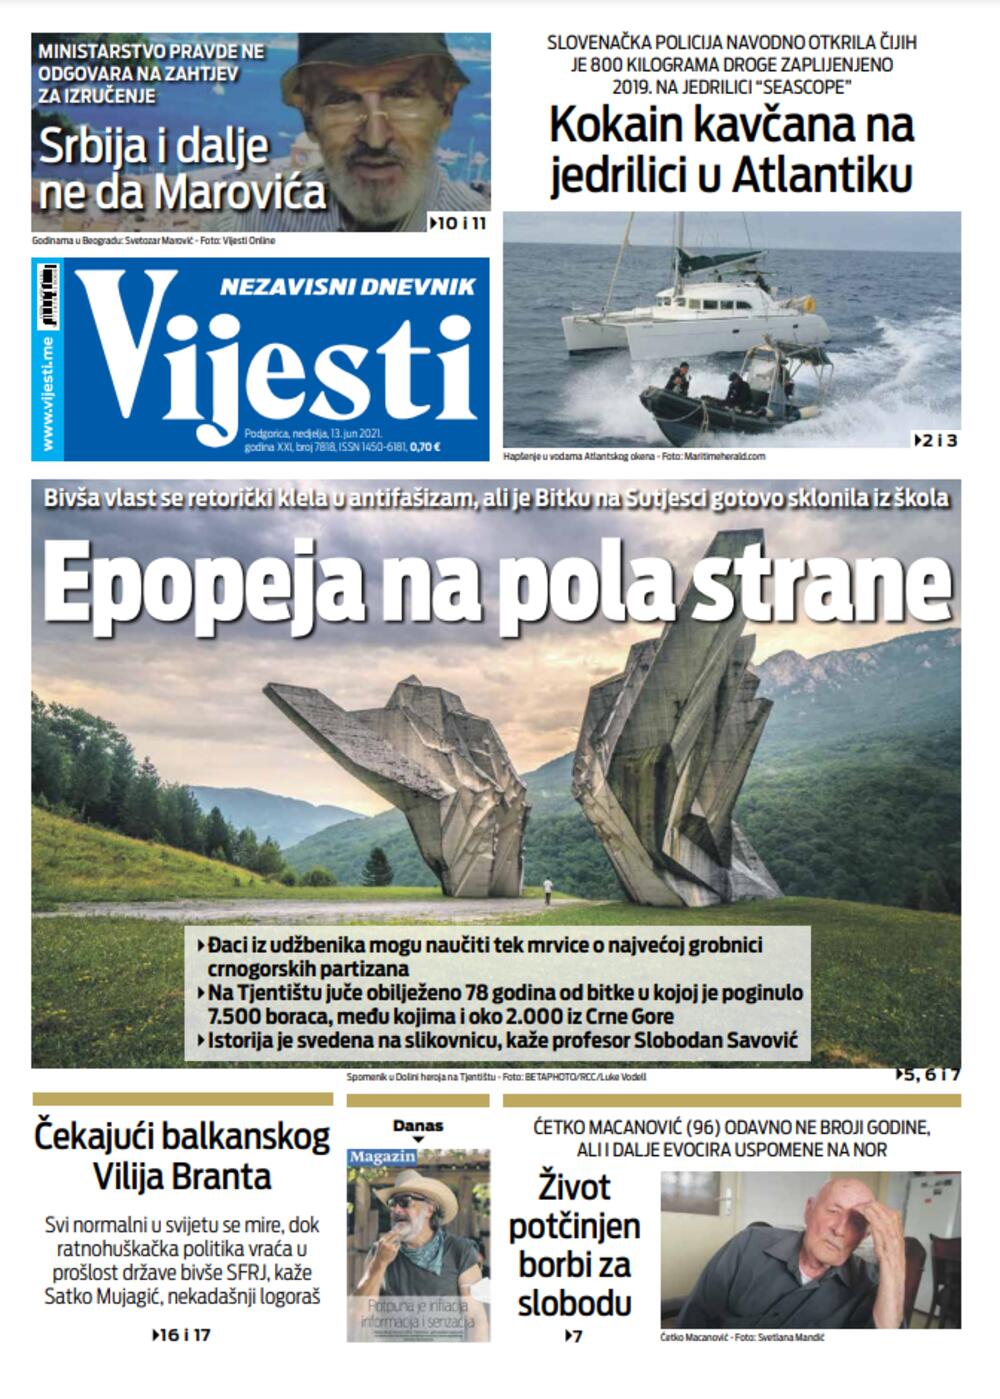 Naslovna strana "Vijesti" za nedjelju 13. jun 2021. godine, Foto: Vijesti